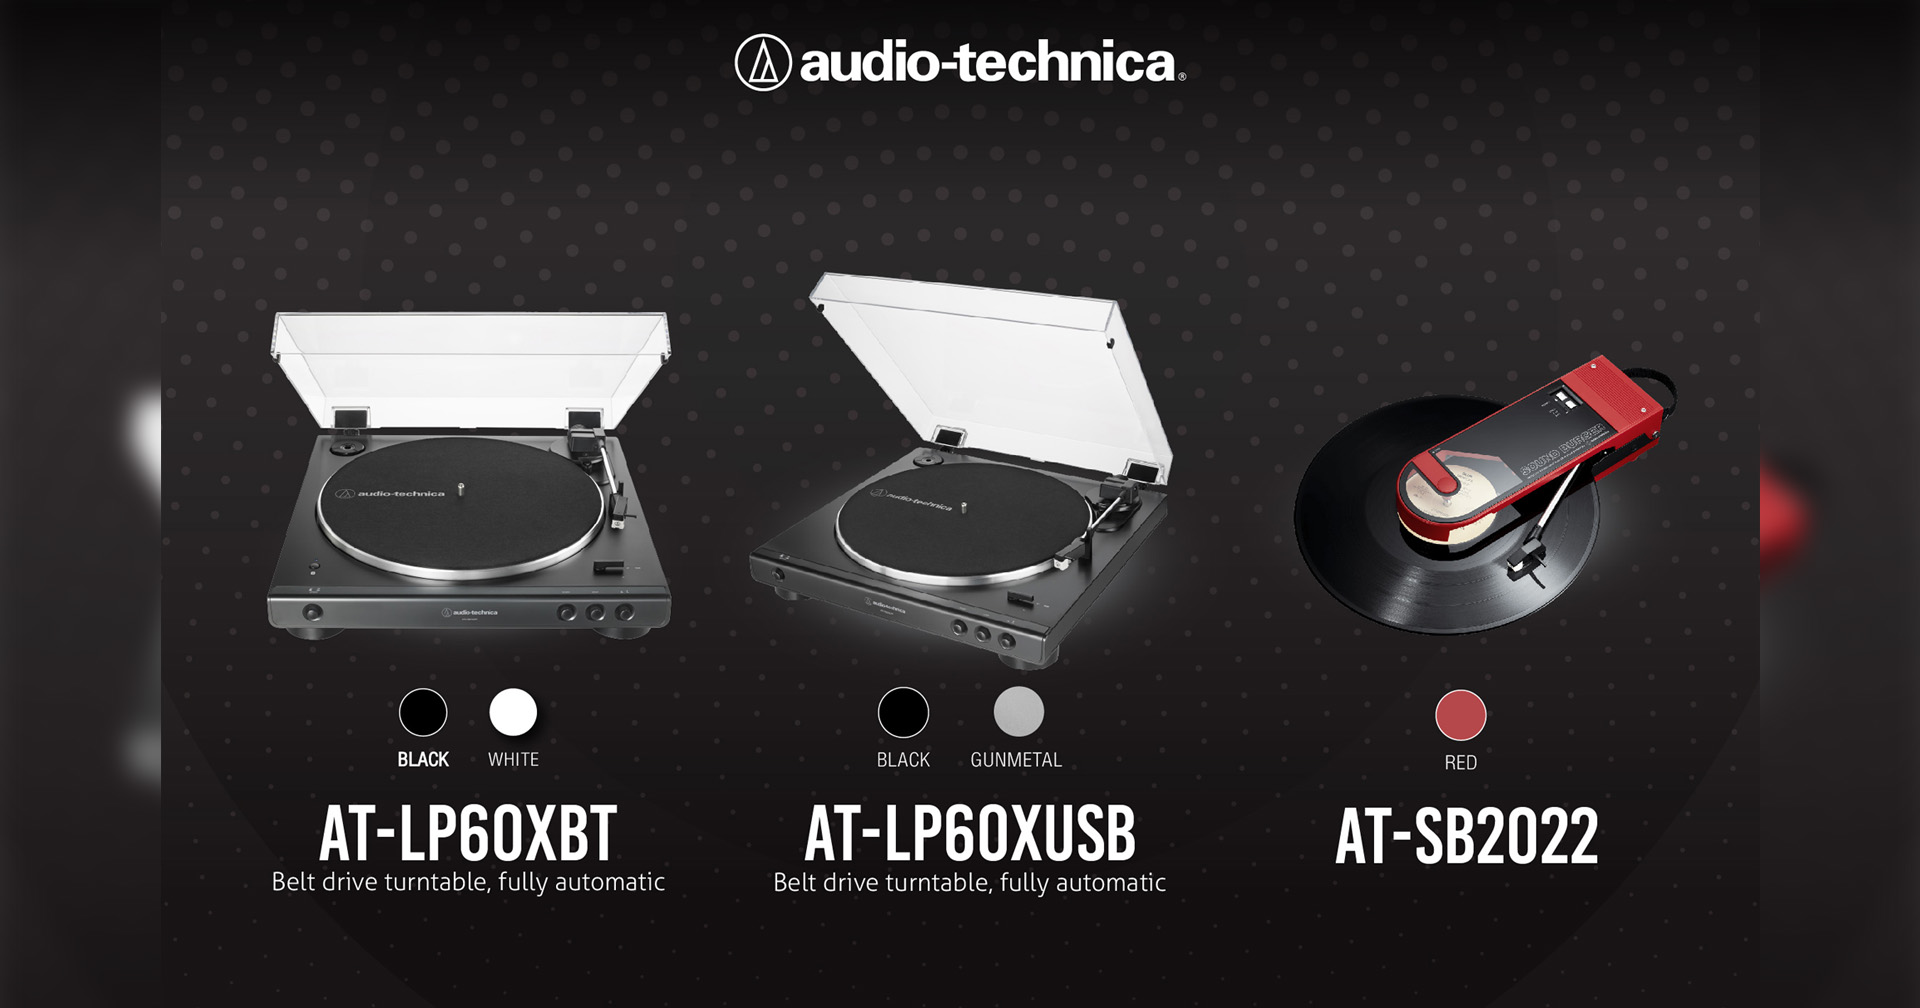 อาร์ทีบีฯ เปิดตัวเครื่องเล่นแผ่นเสียงแบรนด์ Audio-Technica 3 รุ่นใหม่ อัดแน่นด้วยเทคโนโลยีเสียงสุดล้ำ พร้อมการเชื่อมต่อครบครัน